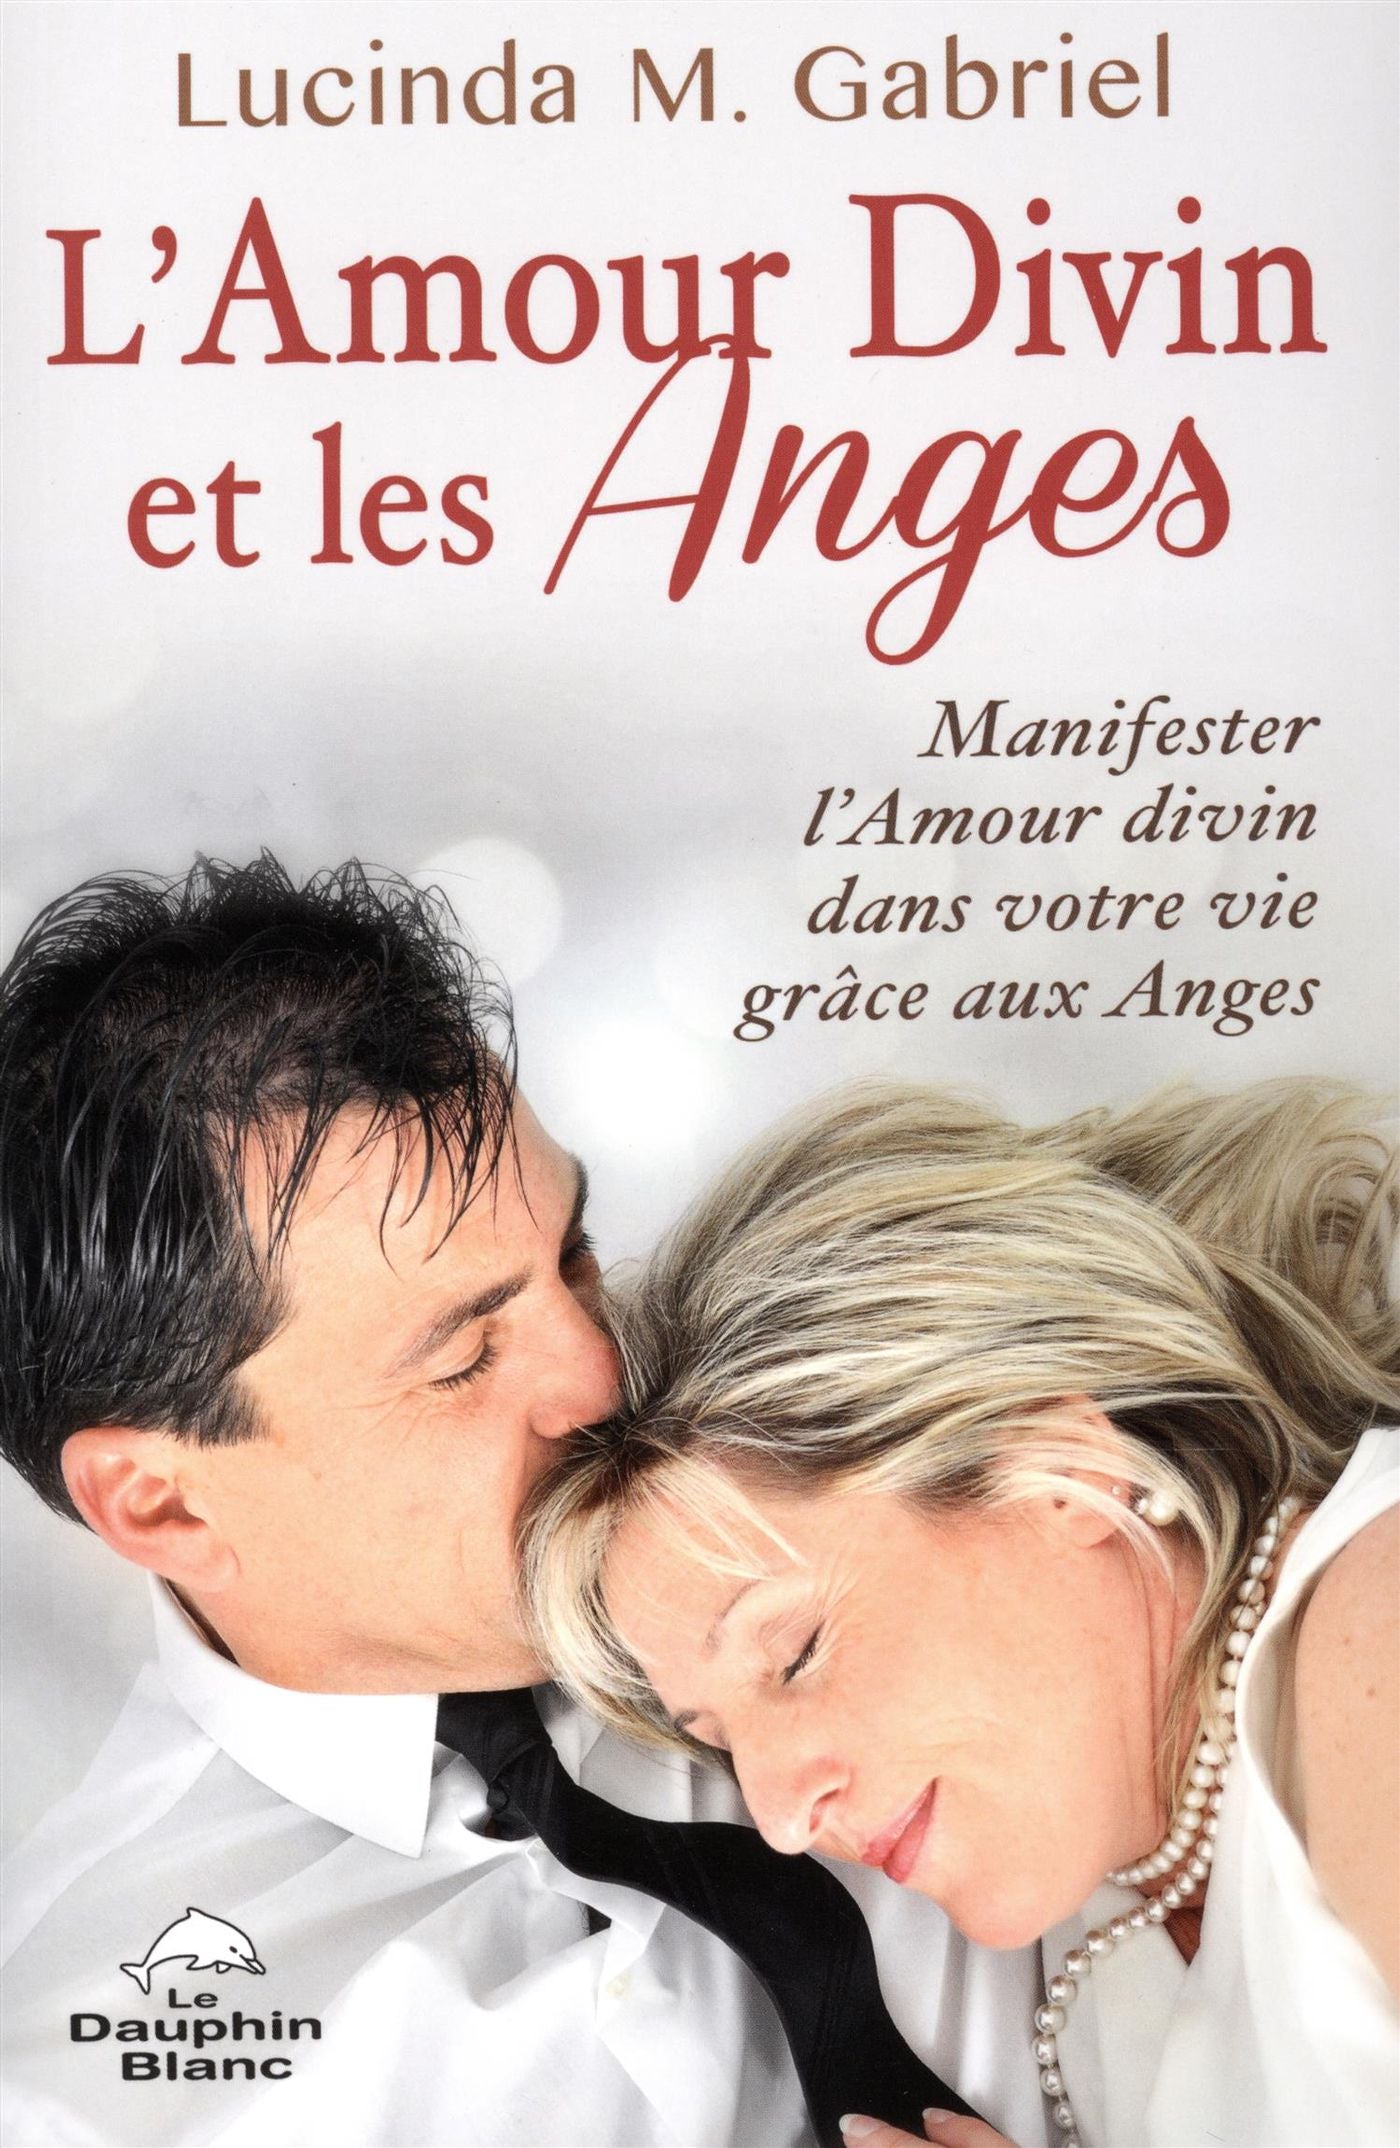 L'amour divin et les Anges : Manigfester l'amour divin dans votre vie grâce aux anges - Lucinda M. Gabriel